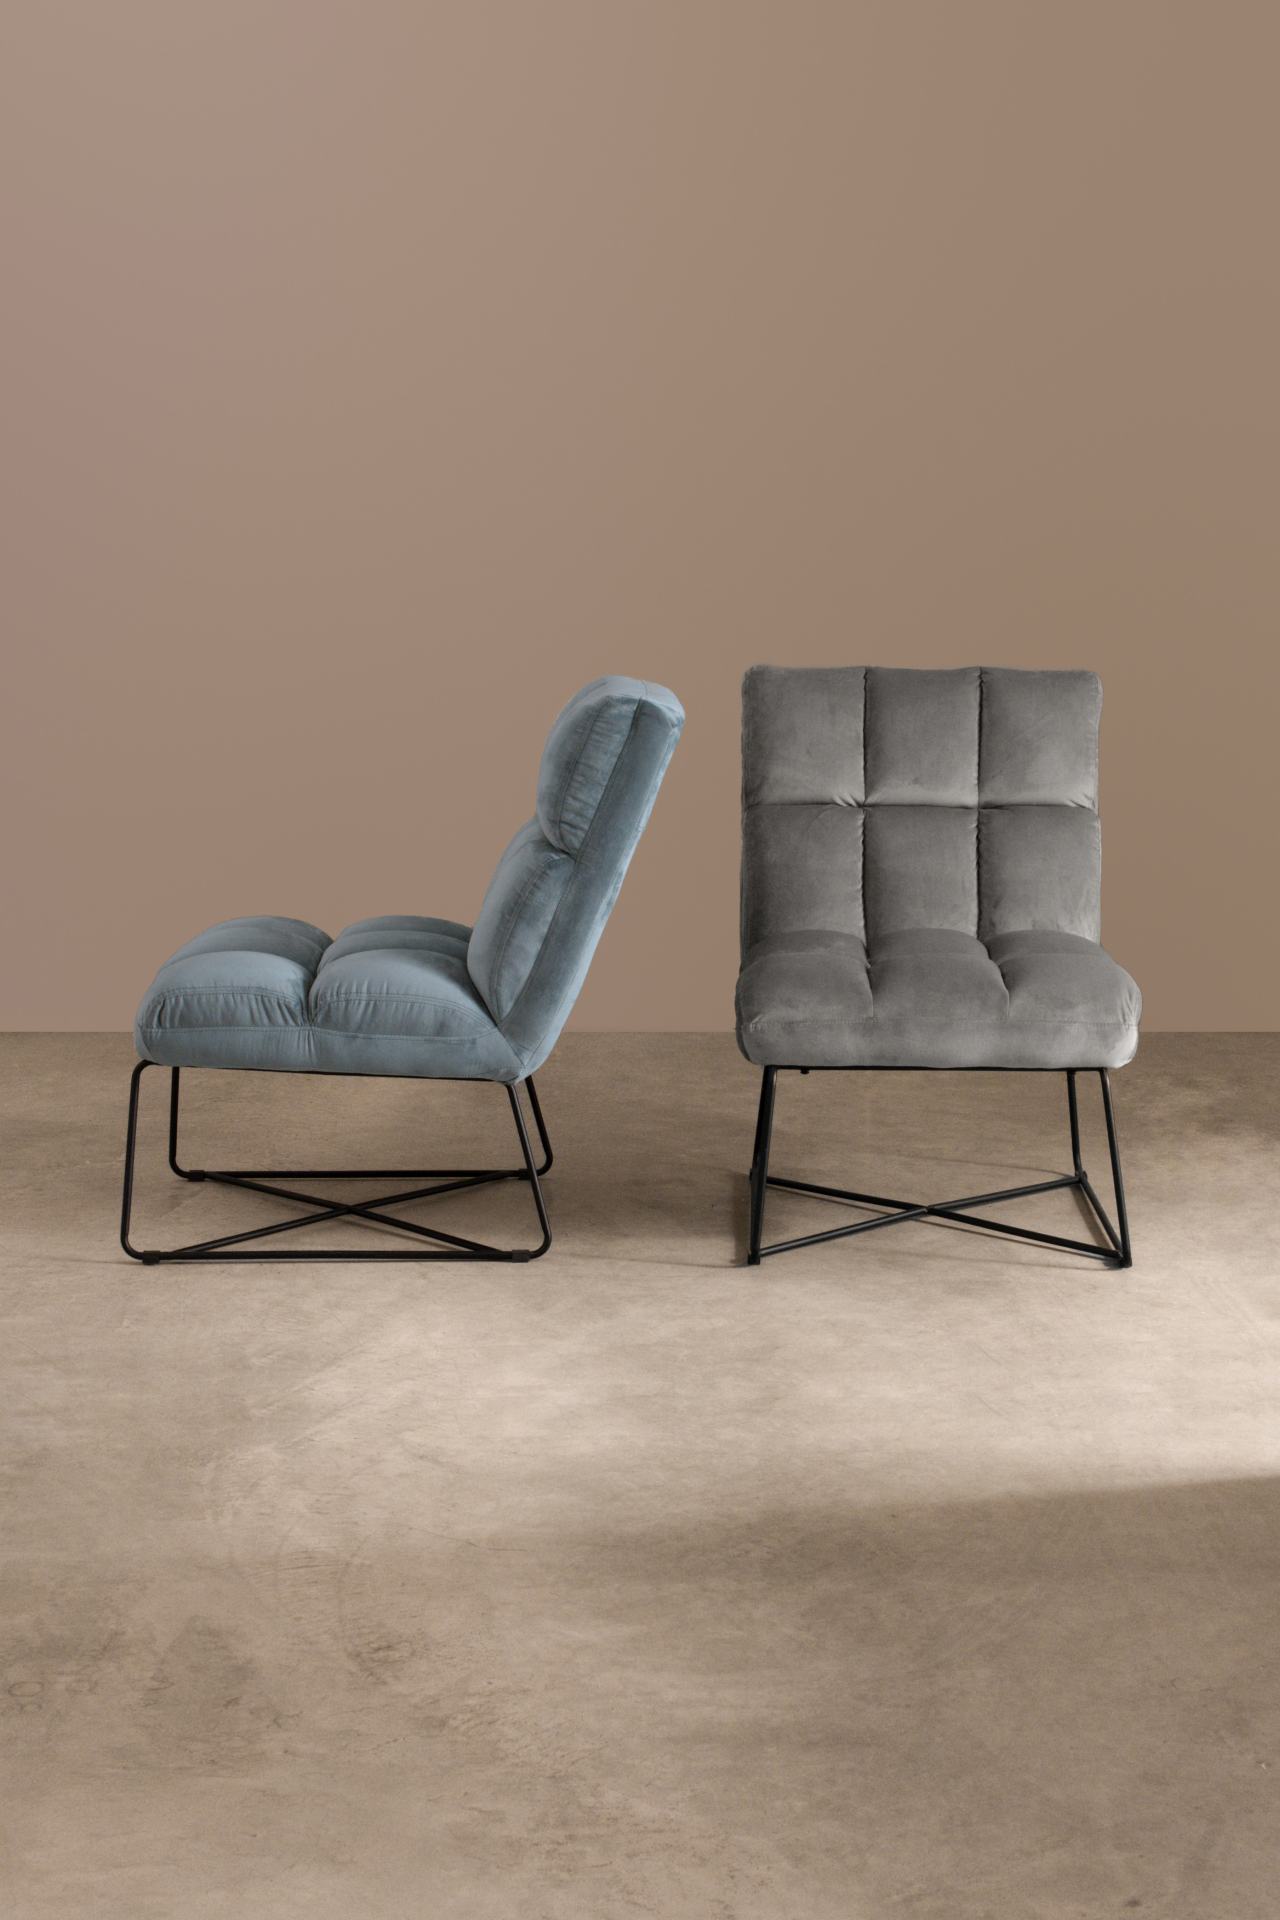 Der Sessel Lizzie überzeugt mit seinem modernen Design. Gefertigt wurde er aus Samt, welcher einen grauen Farbton besitzt. Das Gestell ist aus Metall und hat eine schwarze Farbe. Der Sessel besitzt eine Sitzhöhe von 47 cm. Die Breite beträgt 61 cm.